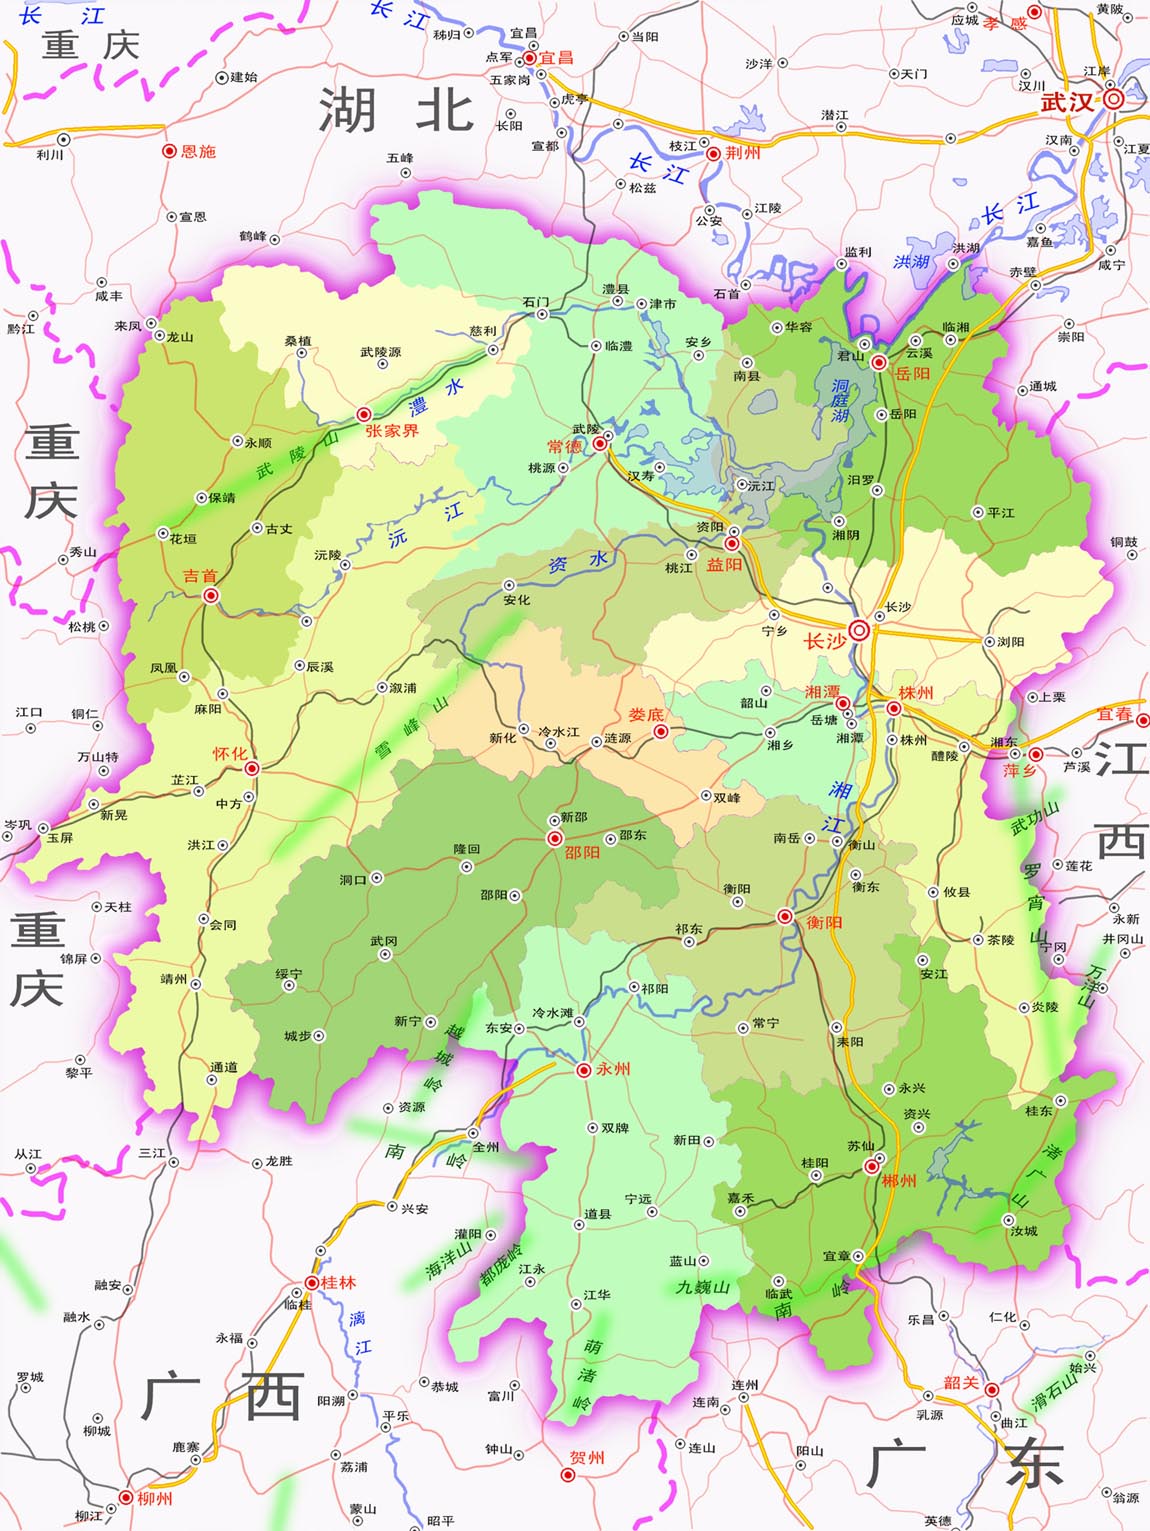 湖南省一些与贵州,广西,重庆接壤的地方,因为转移支付多等原因,希望图片